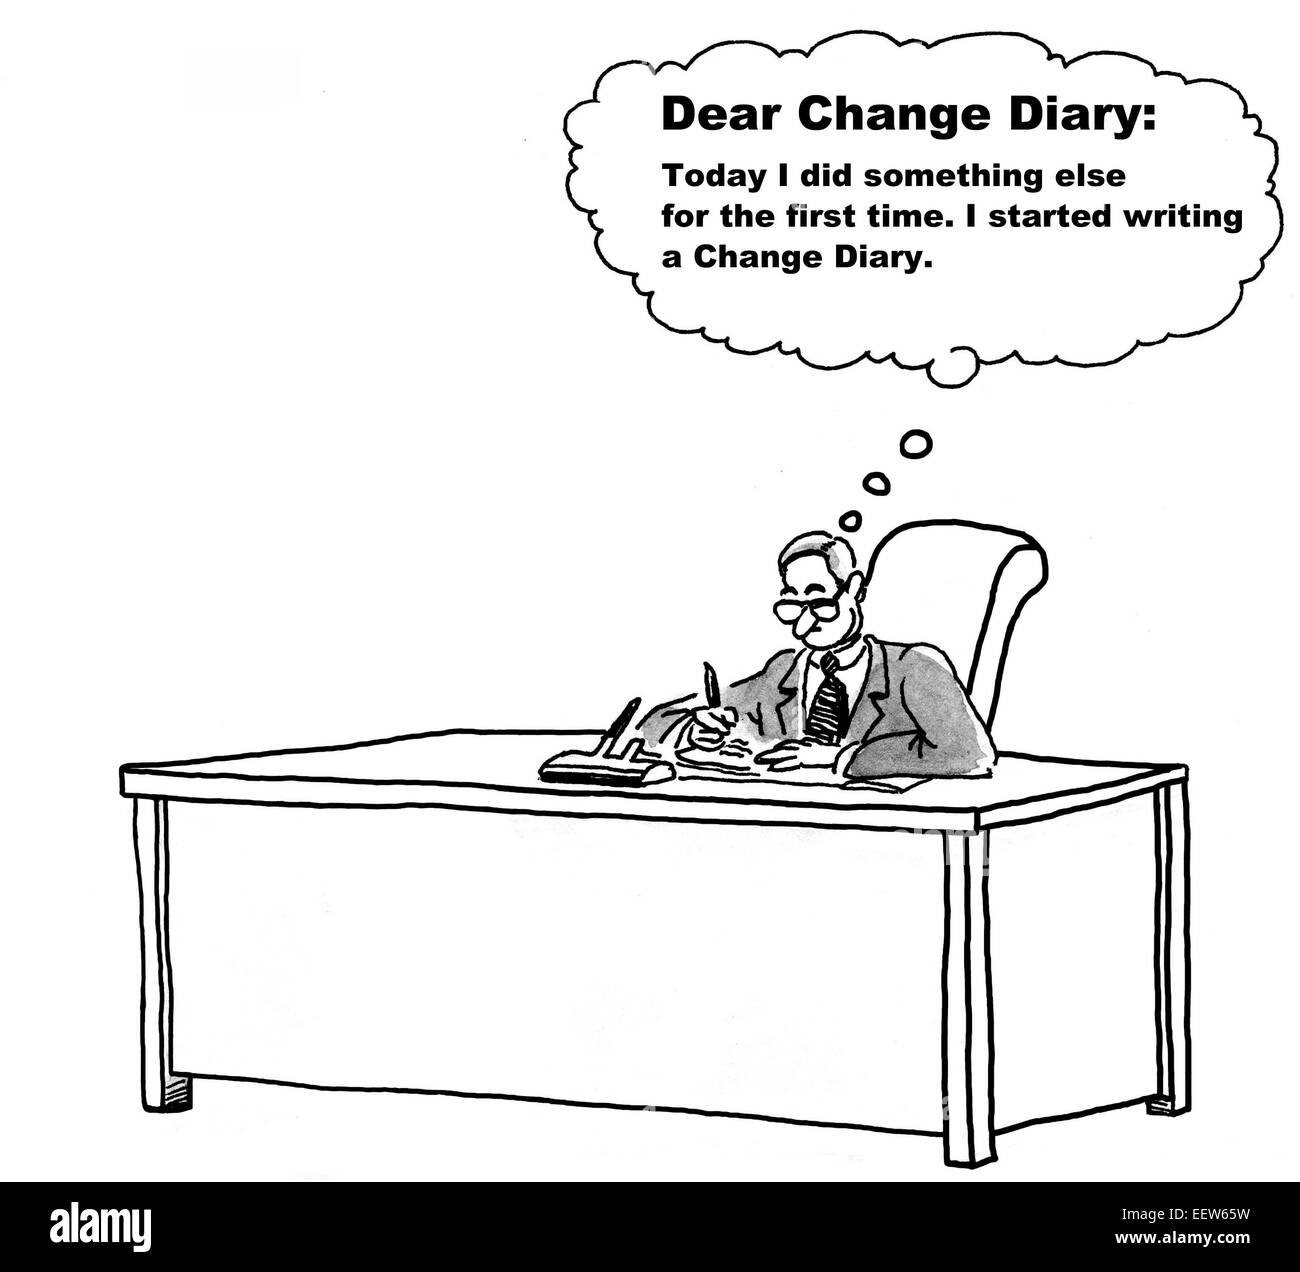 Karikatur von Unternehmer ermutigen selbst zu ändern, indem Sie eine Änderung Tagebuch zu schreiben. Stockfoto